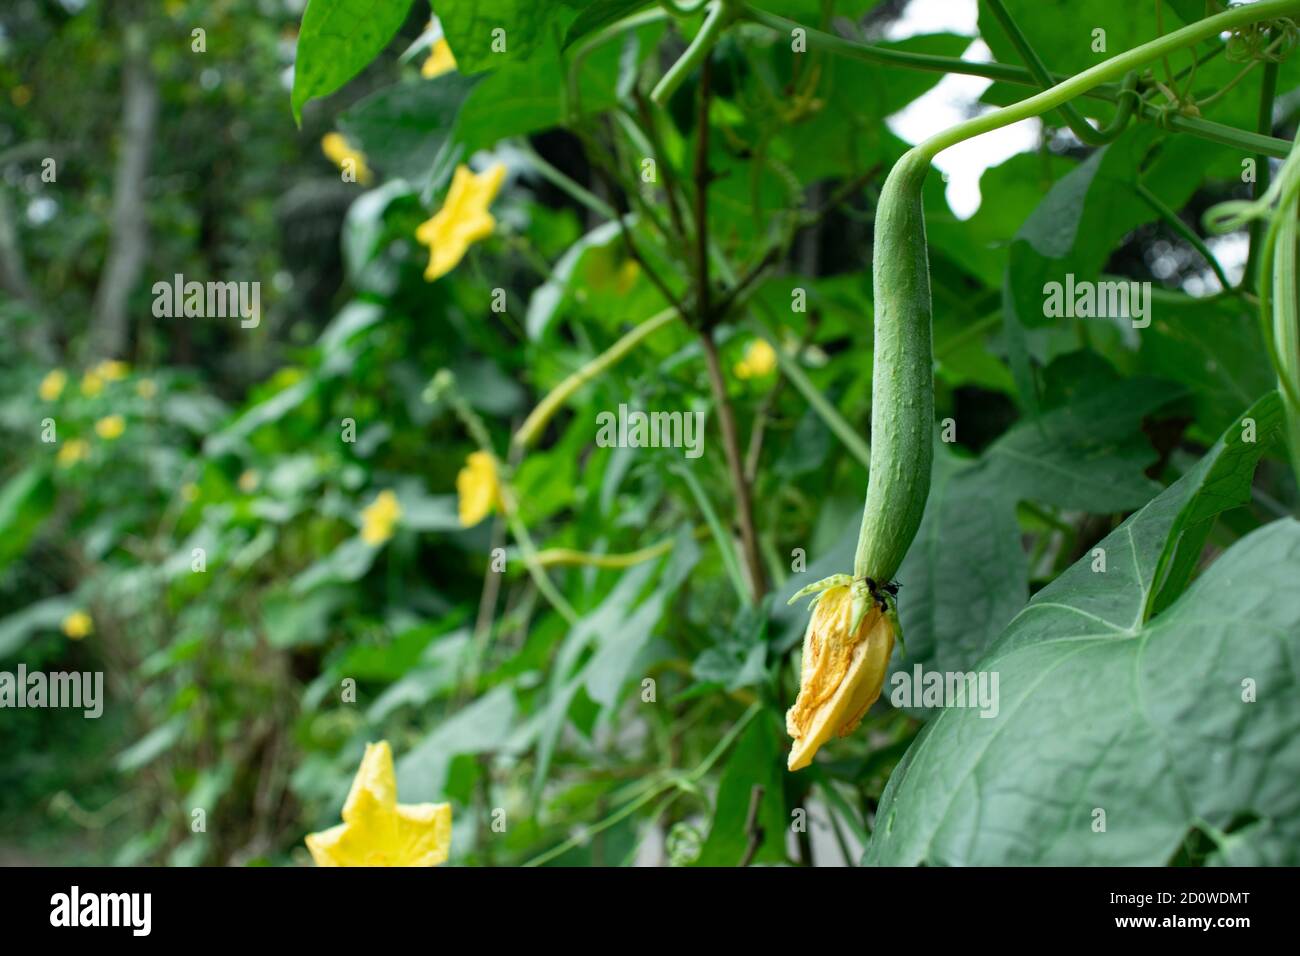 Un Dhundol vegetale verde o Furol Sponge semi di zucca all'aperto Foto Stock